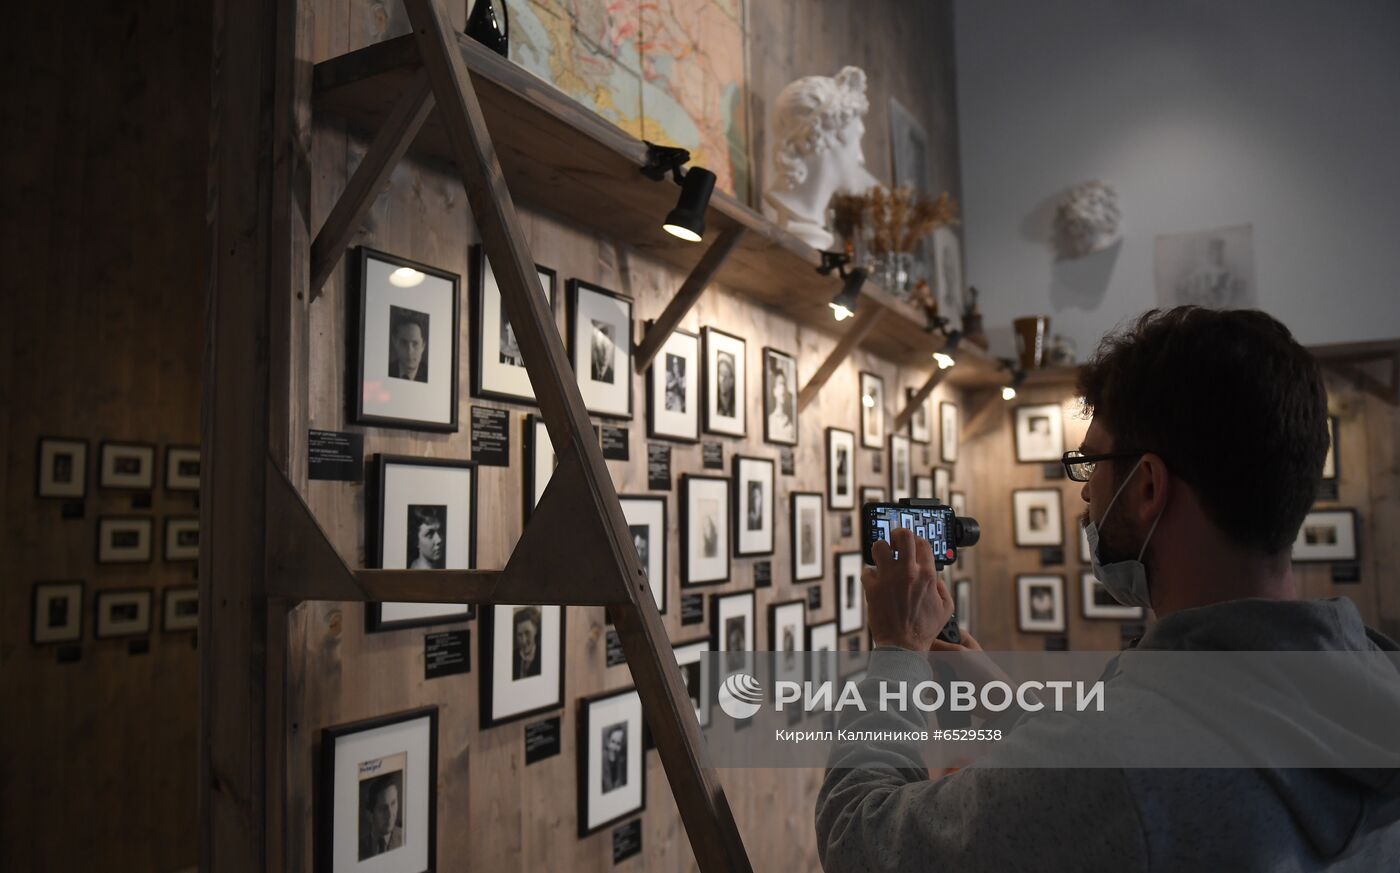 Выставка "Современник. Начало" в ММОМА